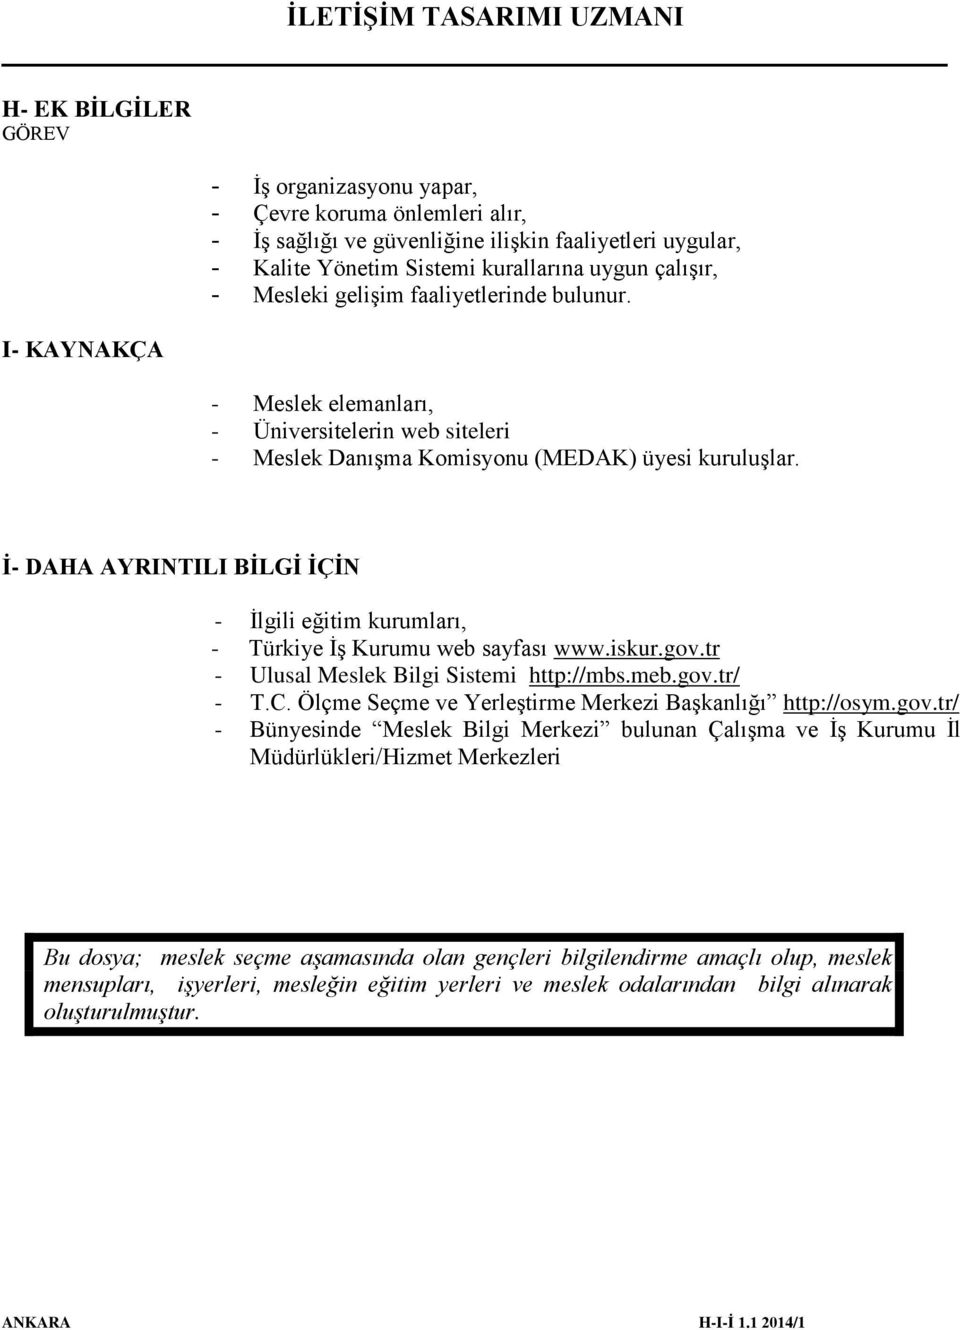 İ- DAHA AYRINTILI BİLGİ İÇİN - İlgili eğitim kurumları, - Türkiye İş Kurumu web sayfası www.iskur.gov.tr - Ulusal Meslek Bilgi Sistemi http://mbs.meb.gov.tr/ - T.C.